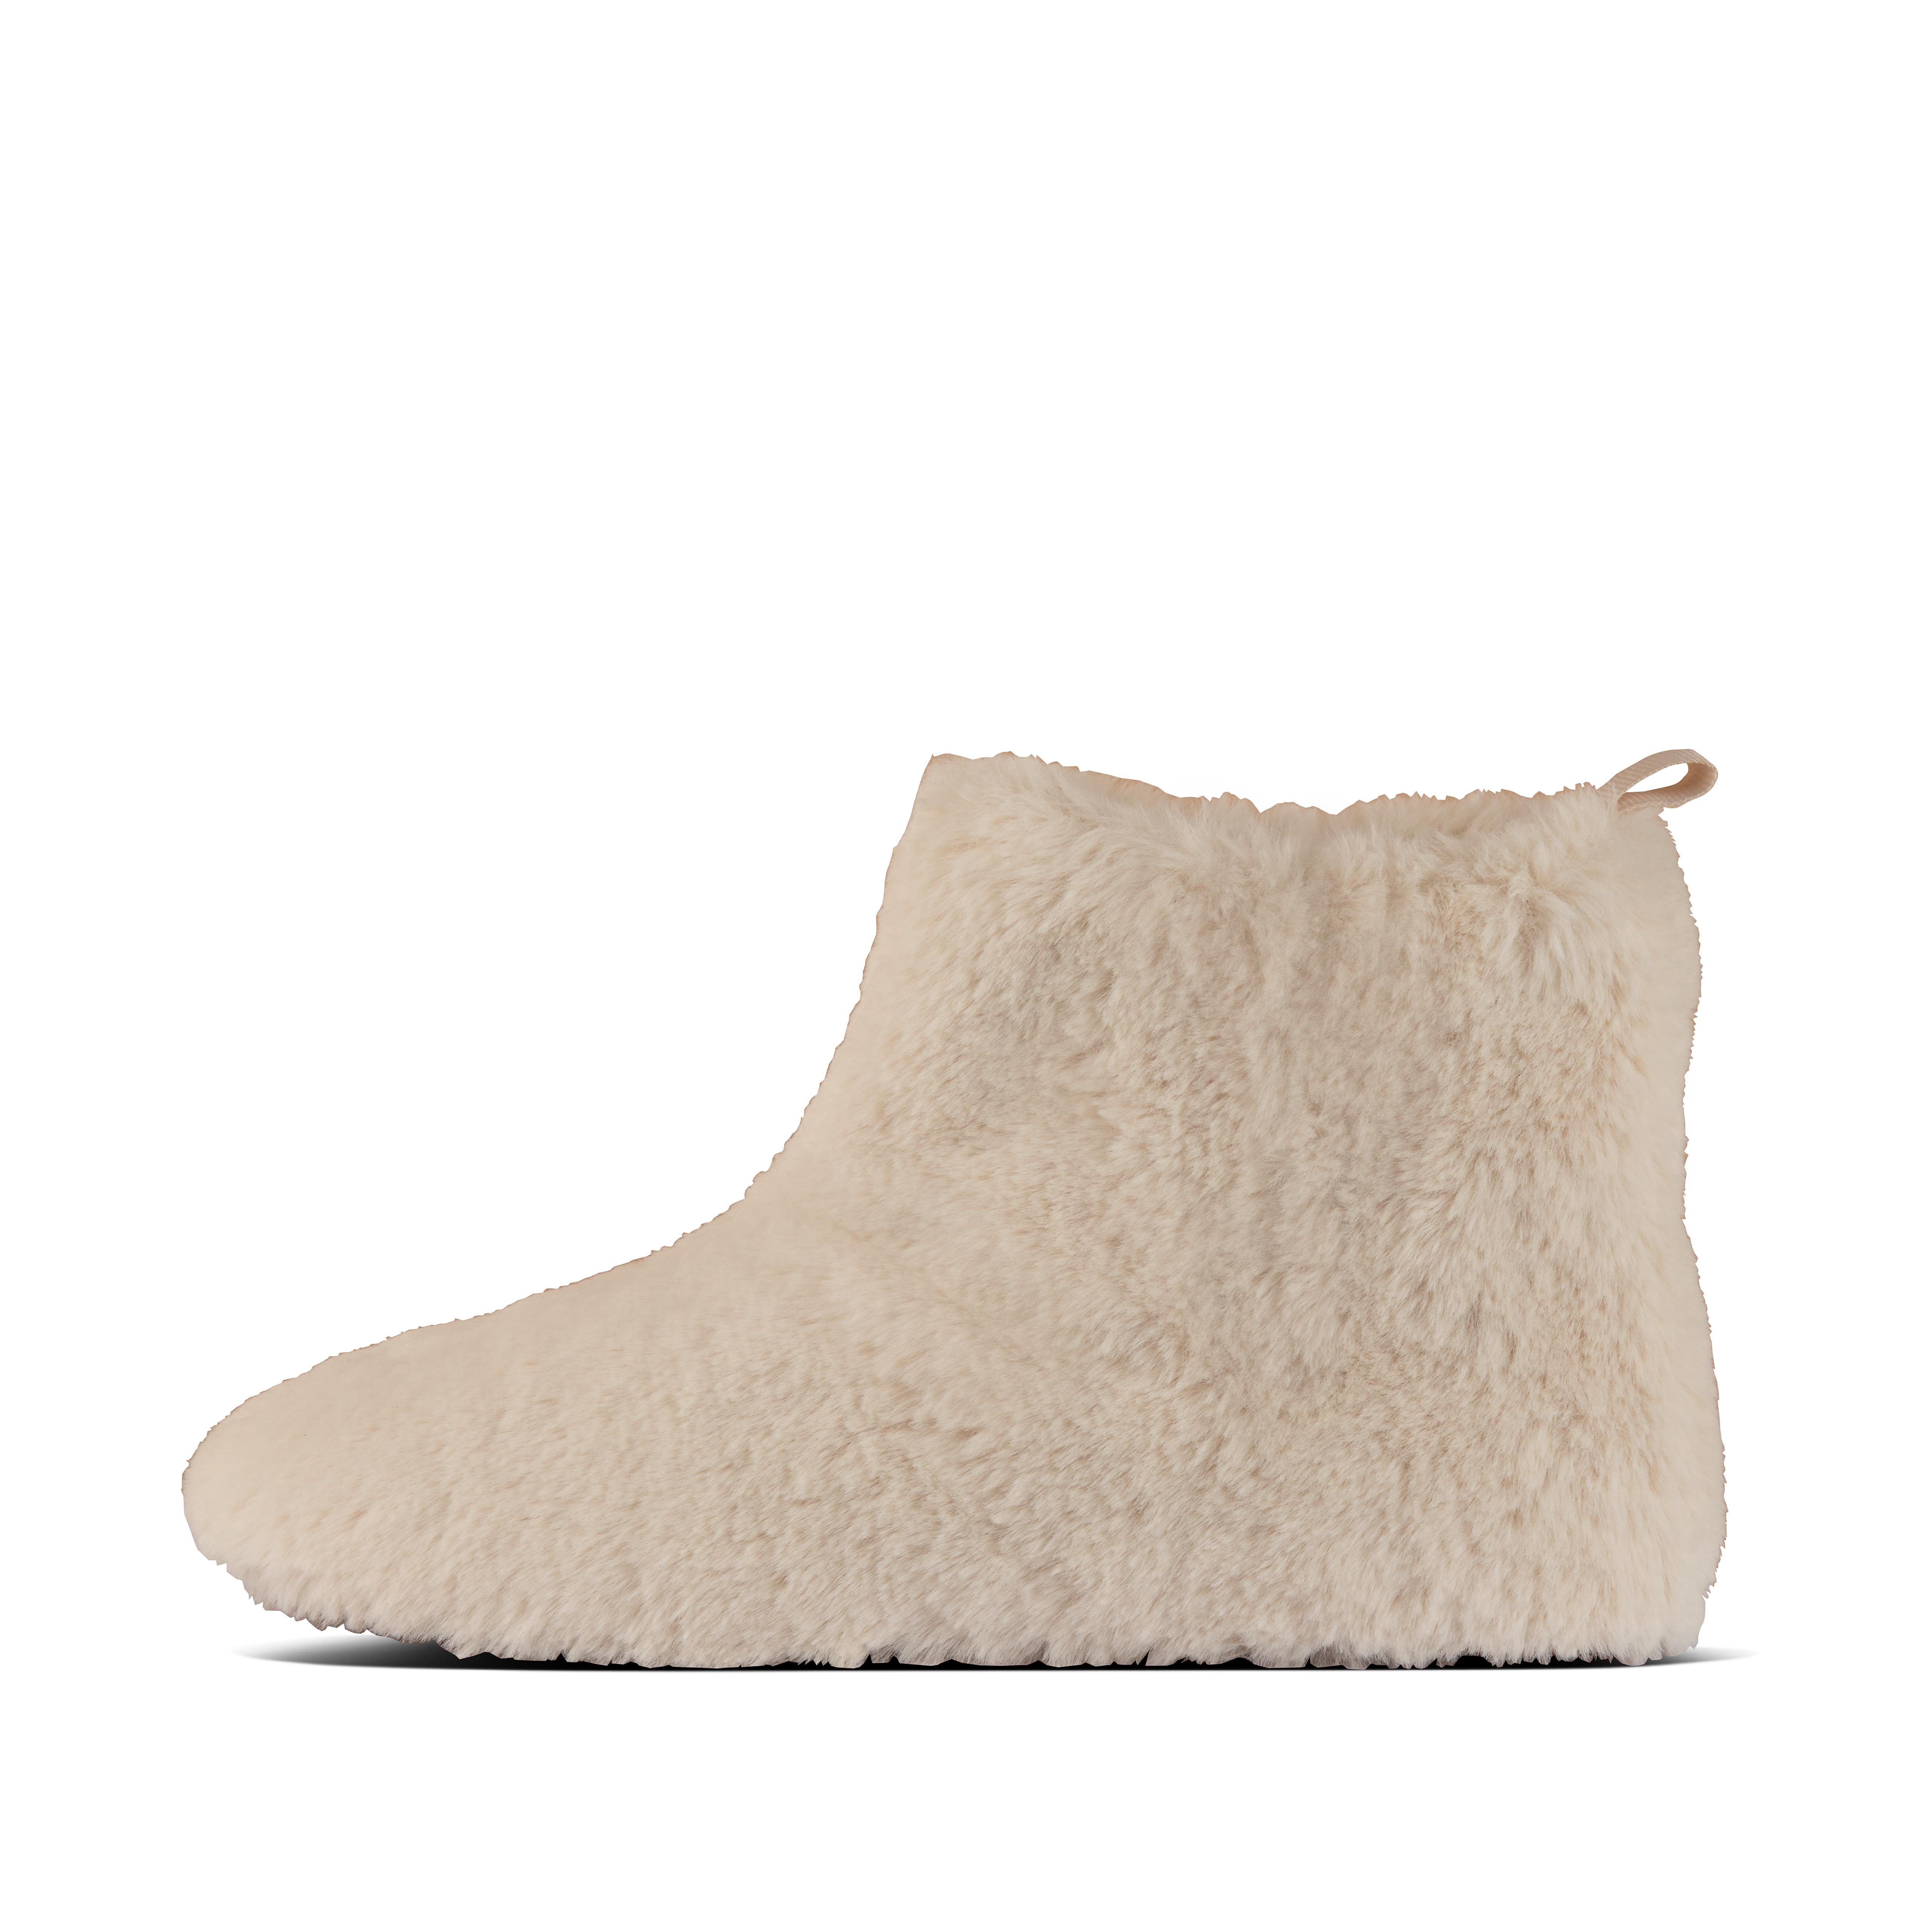 womens fluffy slipper boots